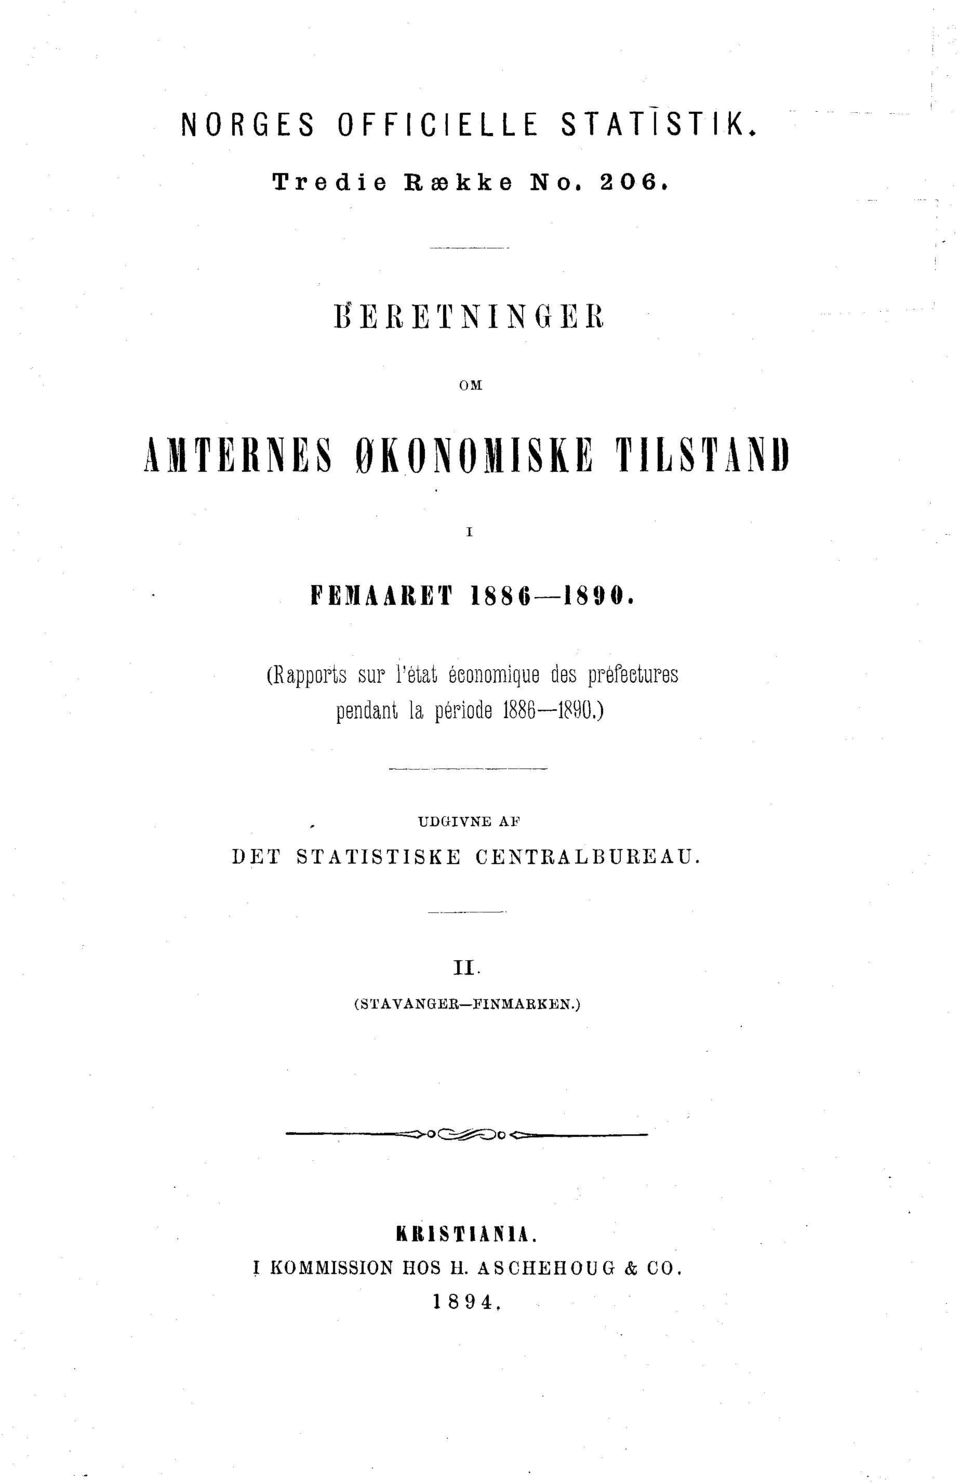 (Rapports sur l'état économique des préfectures pendant la période 1886-1890.